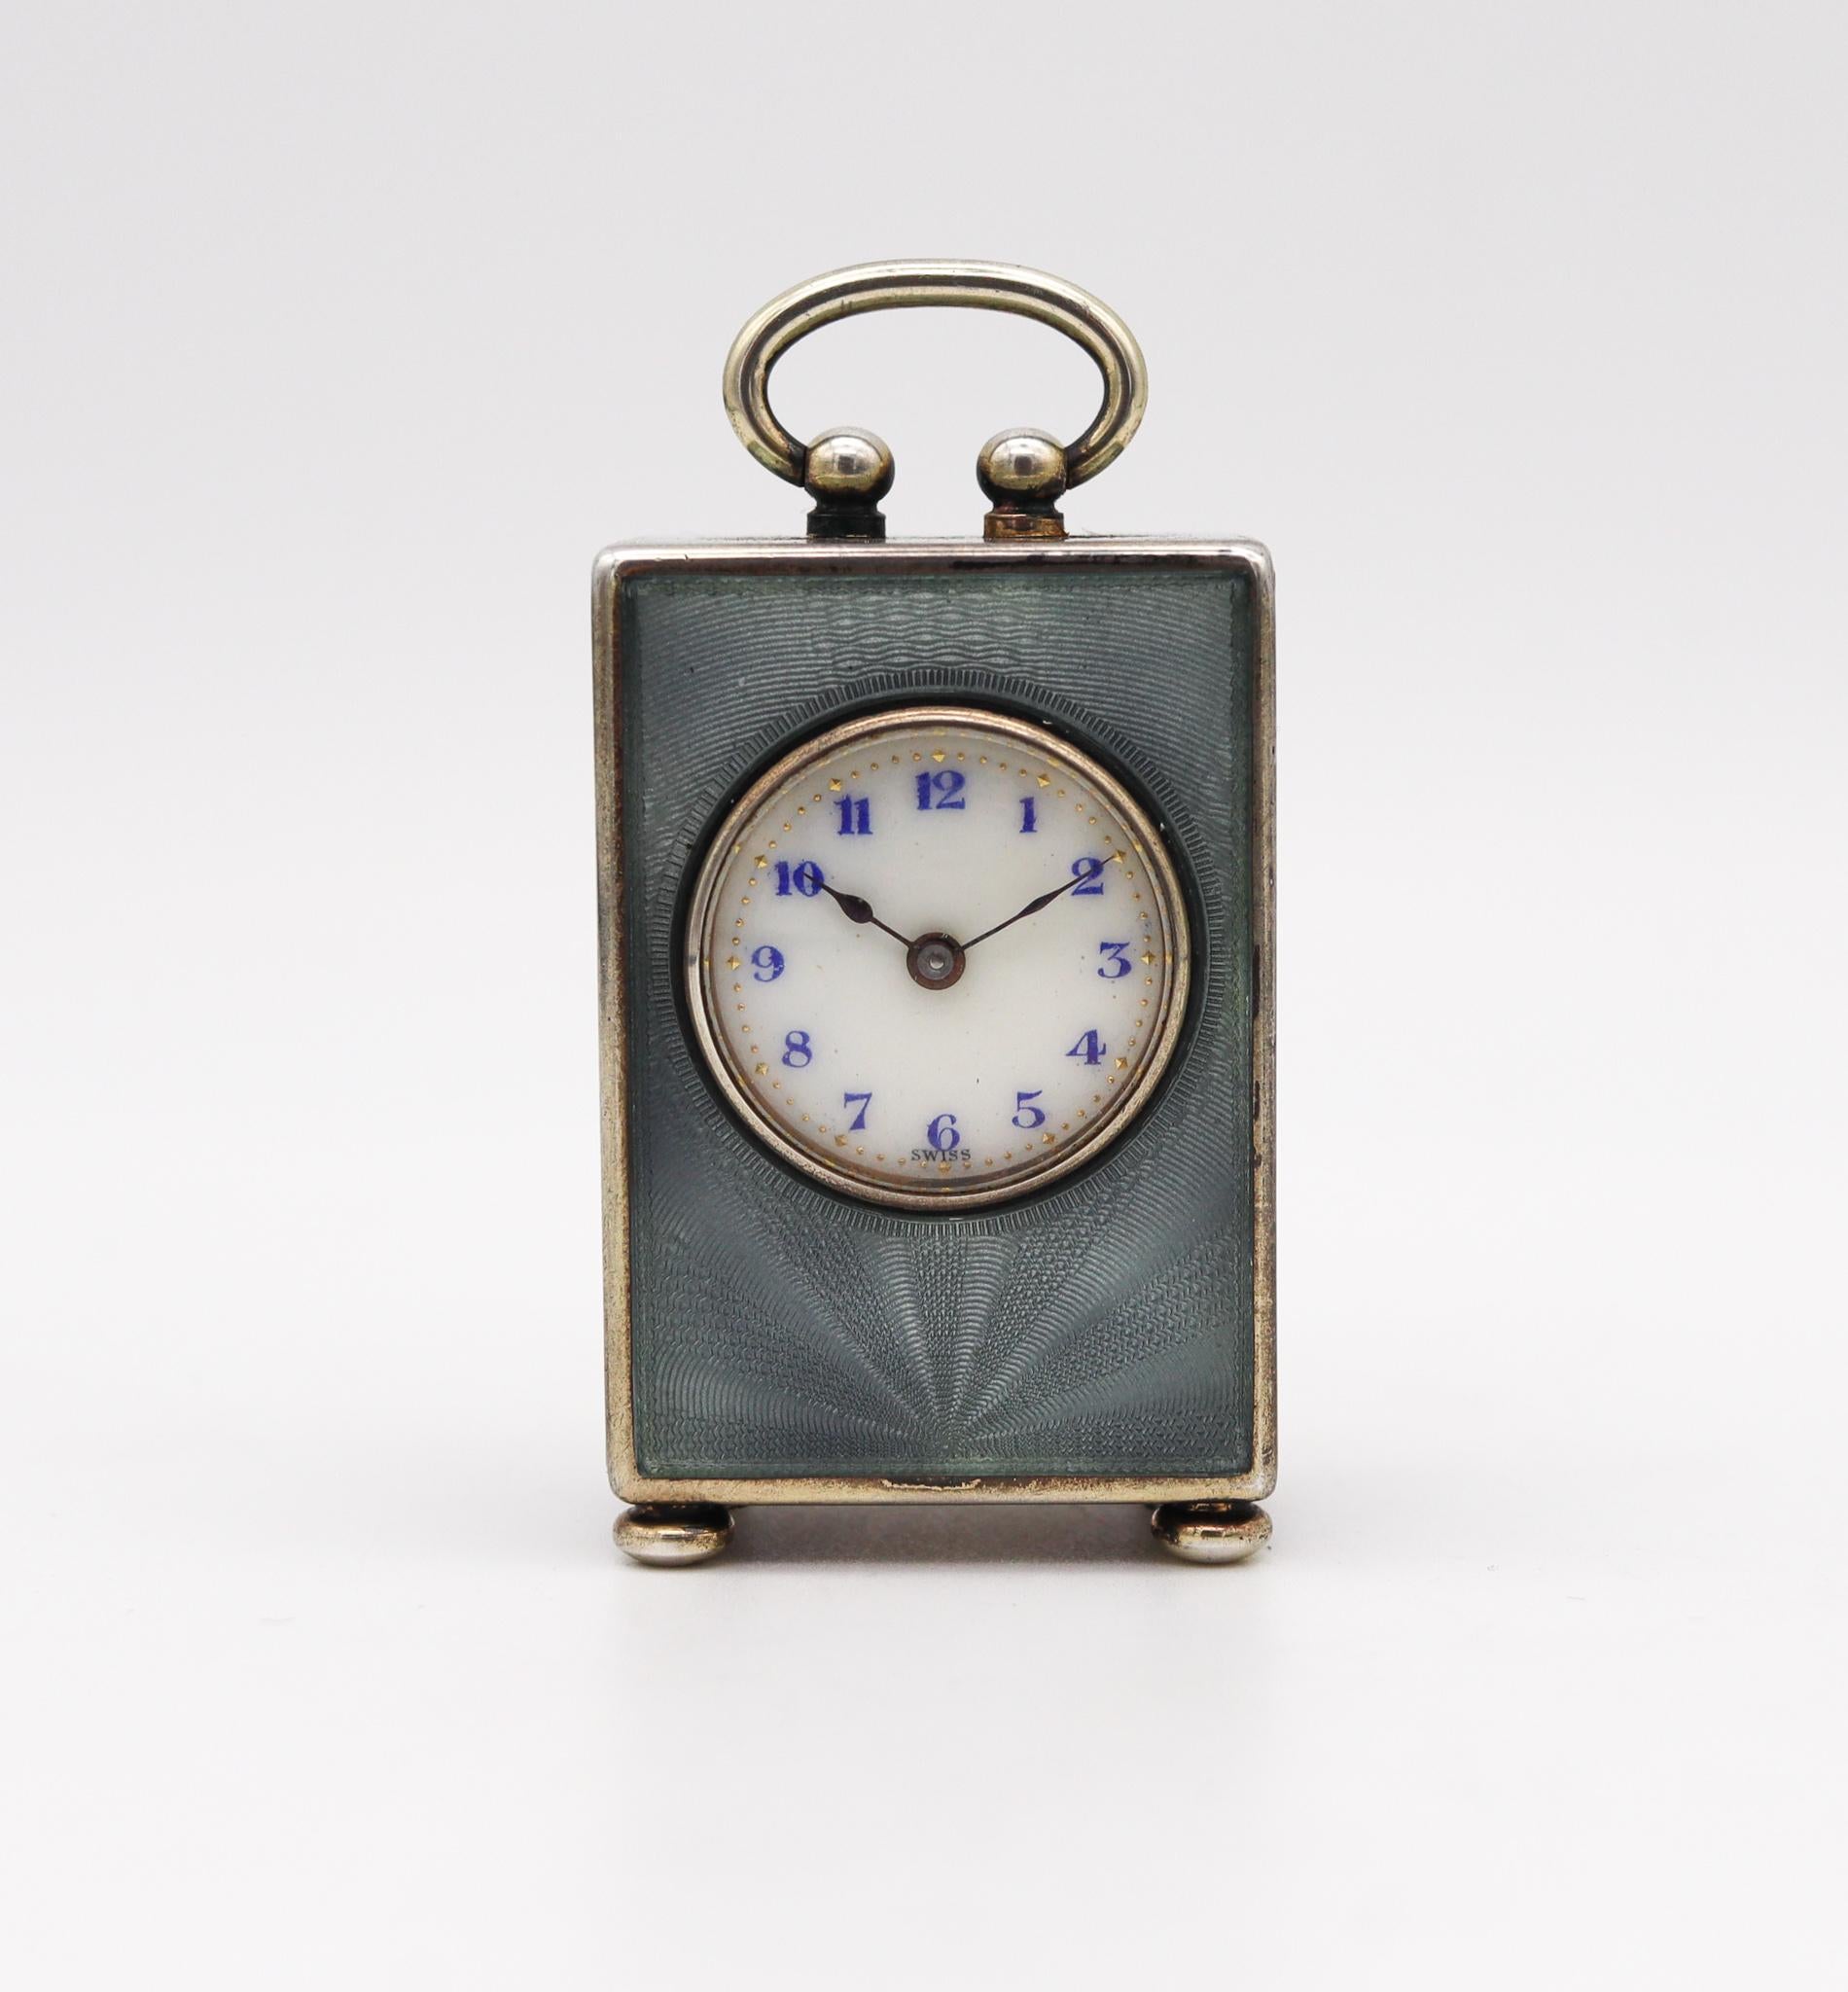 Une horloge de voyage édouardienne miniature conçue par Valmé.

Superbe et rare horloge miniature pour voiture de voyage, fabriquée à Genève en Suisse par la Valmé Swiss Co. et la Concord Watch Co. Cette petite horloge ancienne est exceptionnelle,